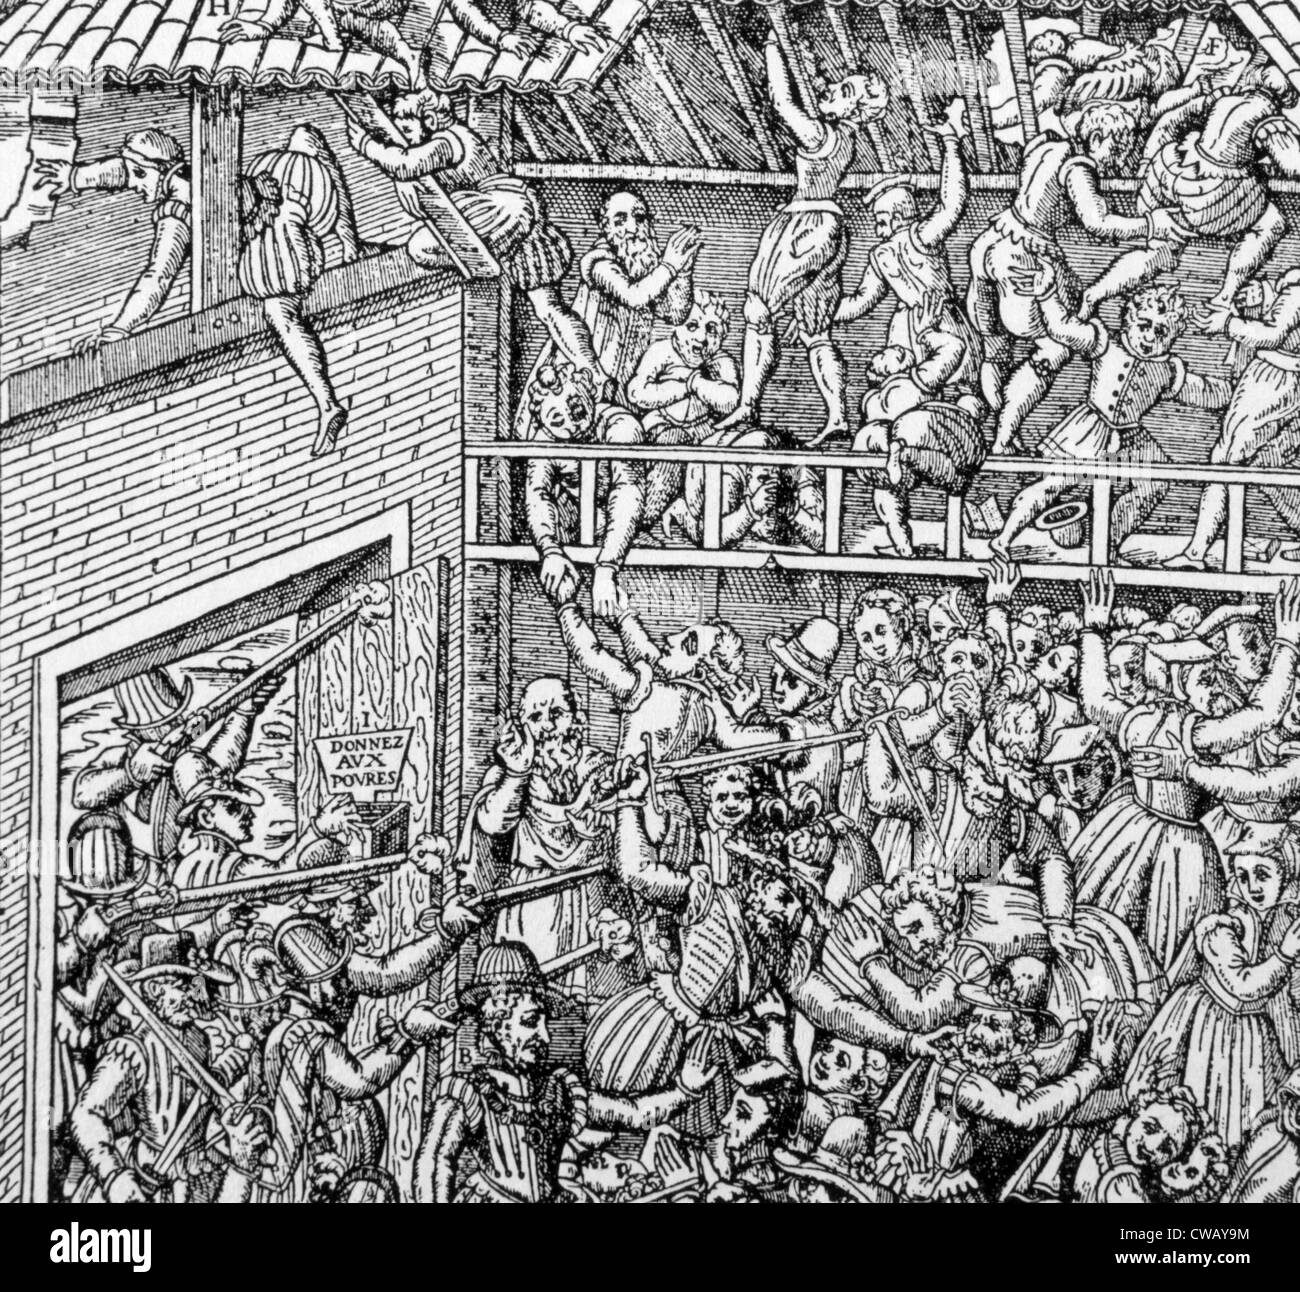 Le massacre d'une congrégation Huguenot dans une grange par le Duc de Guise et ses hommes, Vassy, France, 1562. Banque D'Images